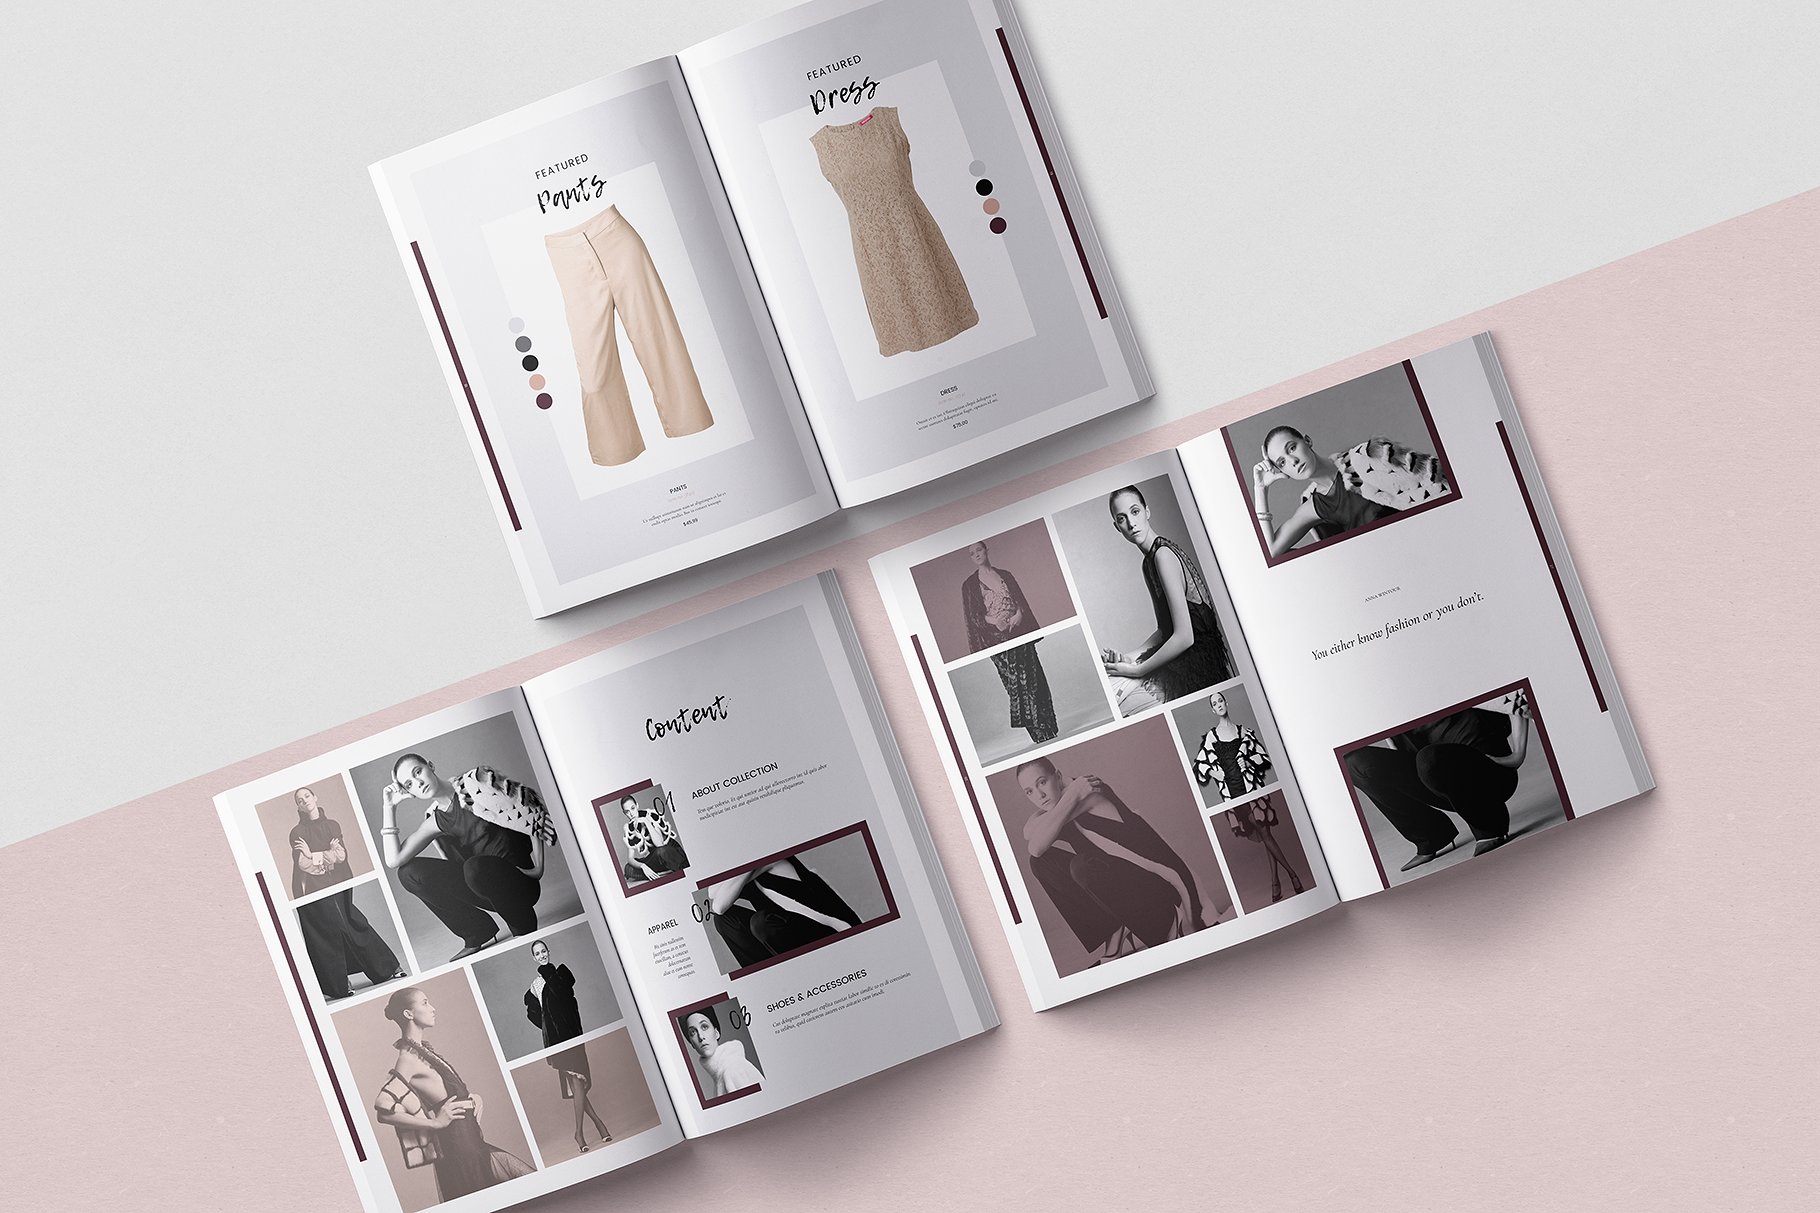 时尚优雅的女性服装A4画册模板 Modern Elegant Women’s Clothing A4 Album Template插图8